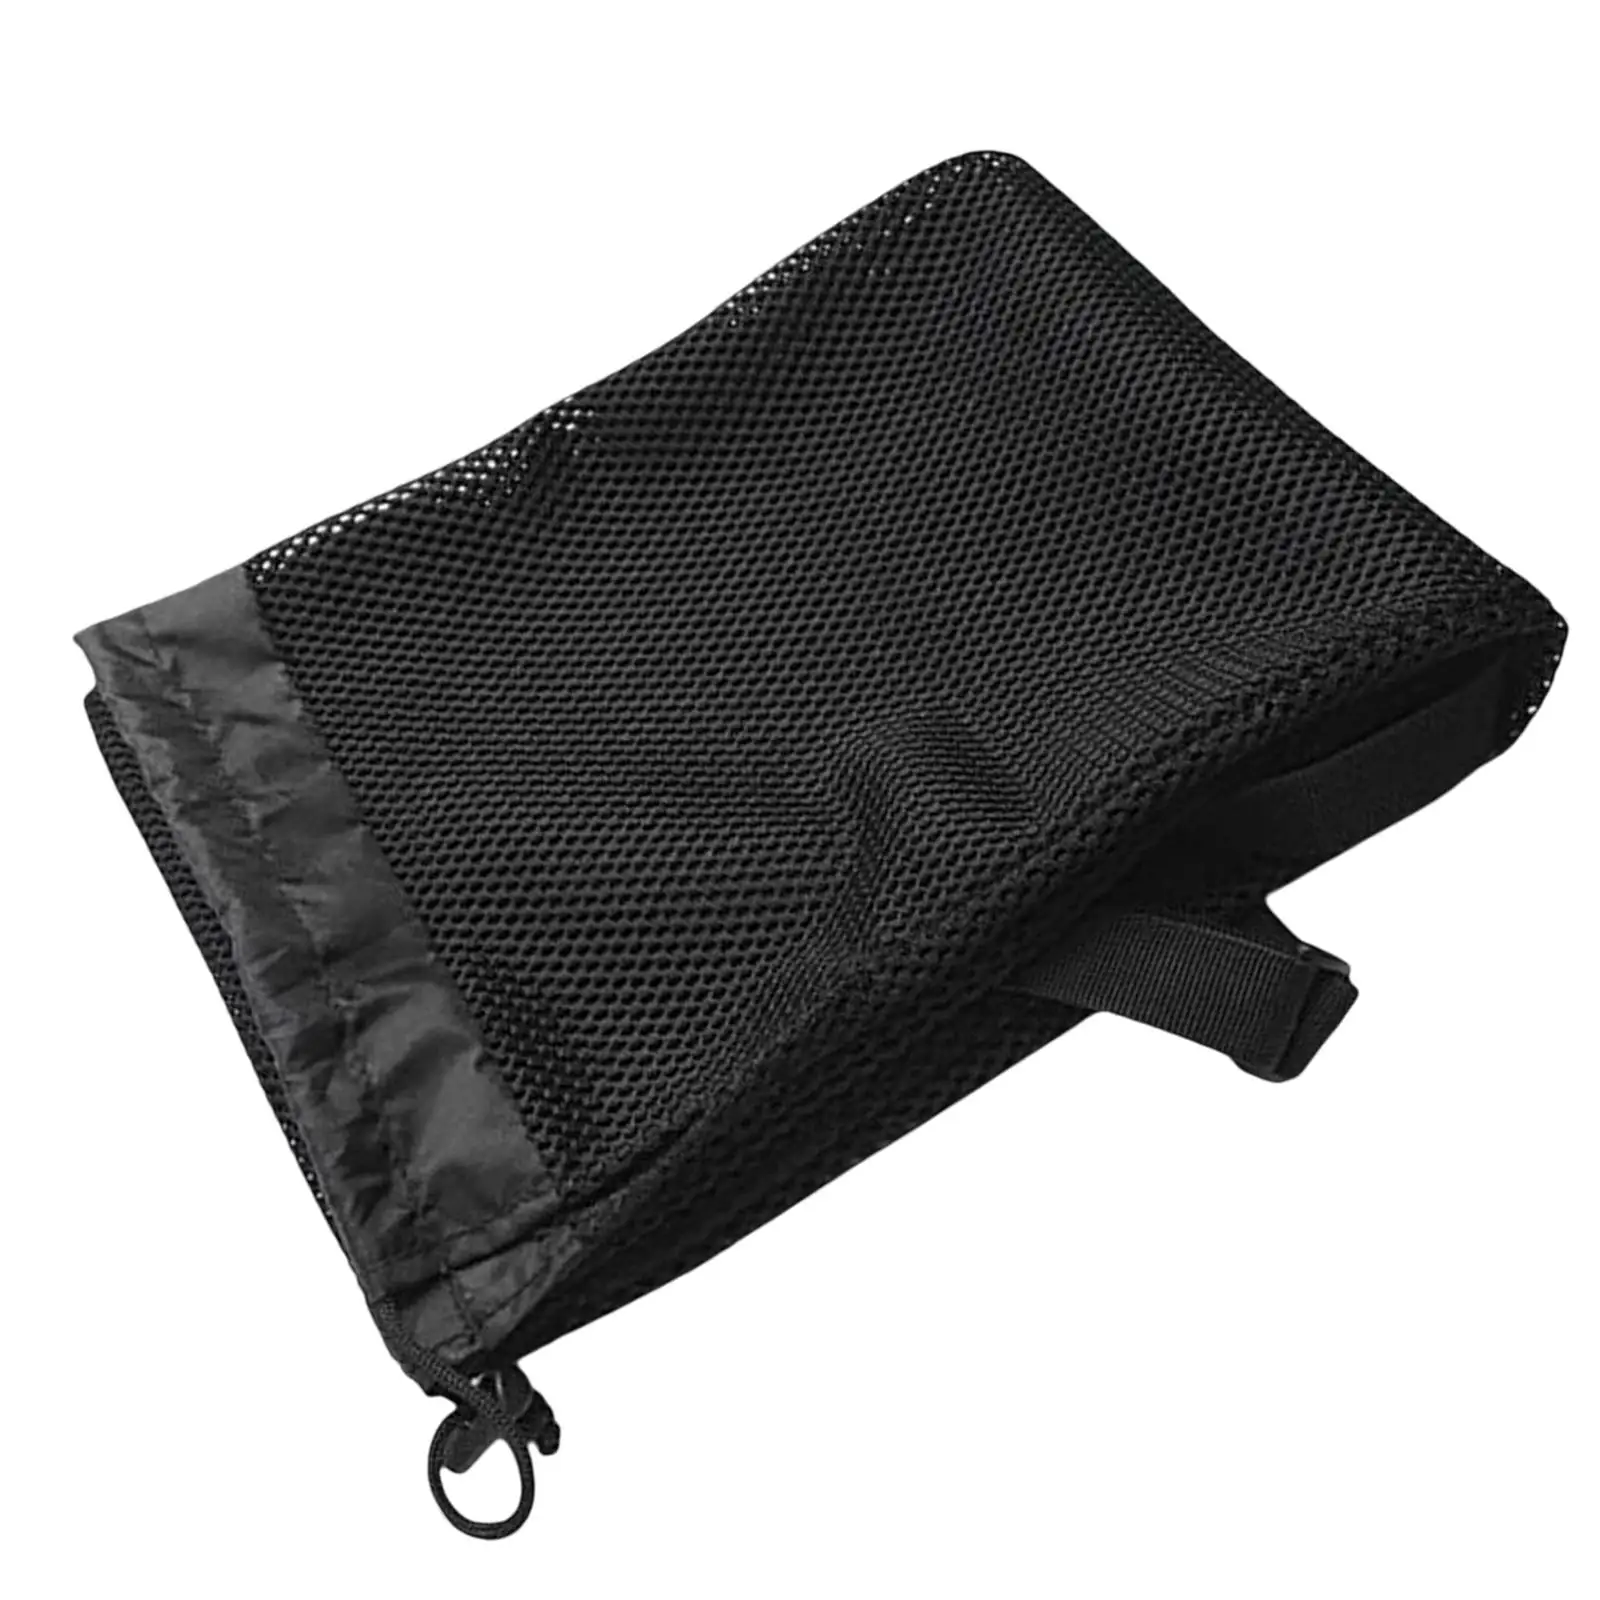 Durable  Bag Adjustable Shoulder Strap for Canoe Split Shaft Pouch Carrying Bag Holder Protector Case Cover